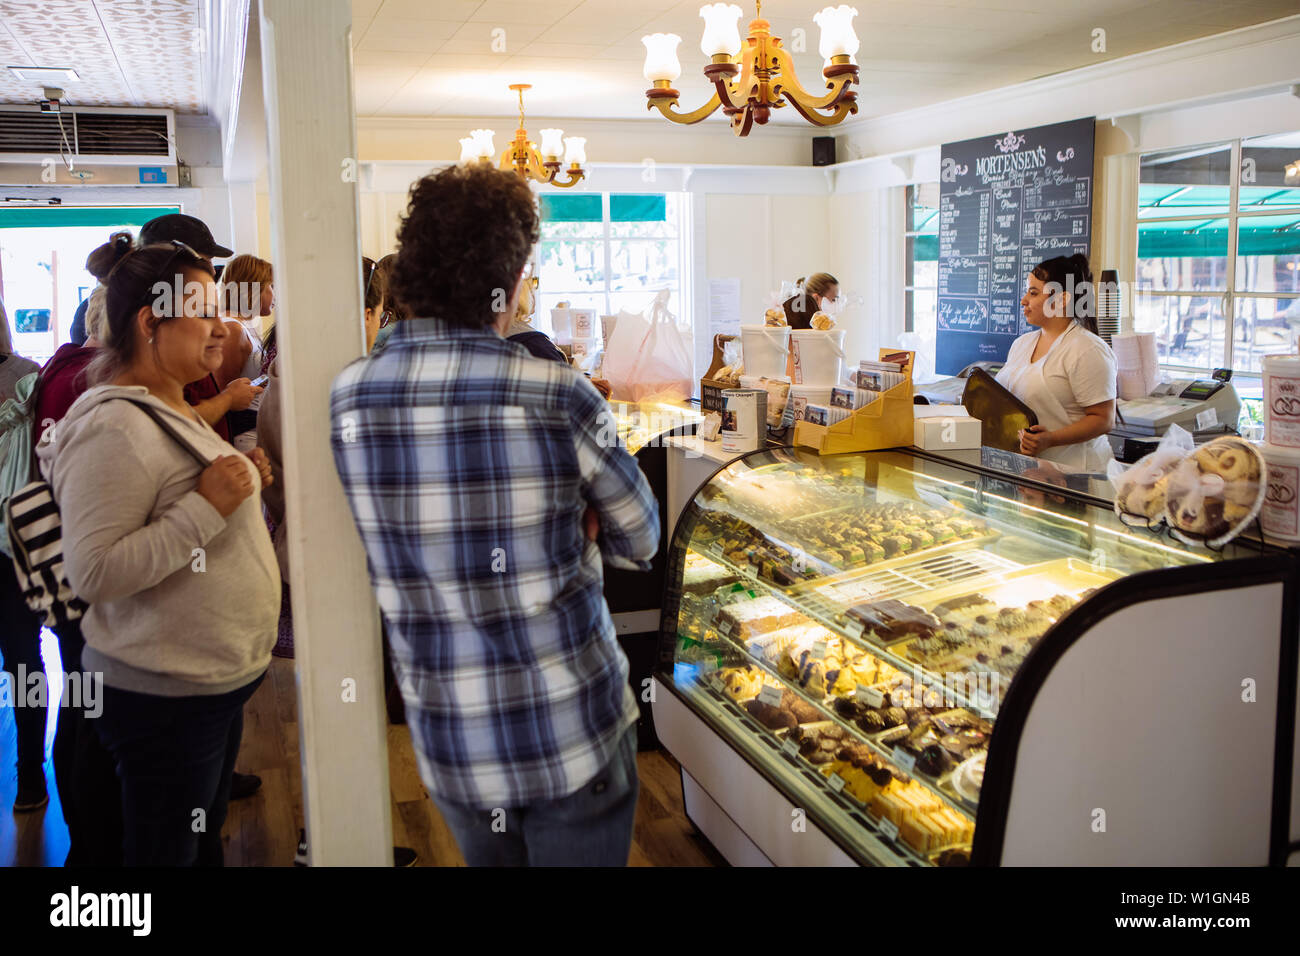 Touristes attendant d'acheter la pâtisserie à Mortensen une boulangerie danoise typique dans la ville danoise de Solvang, Santa Barbara, Californie, Etats-Unis Banque D'Images